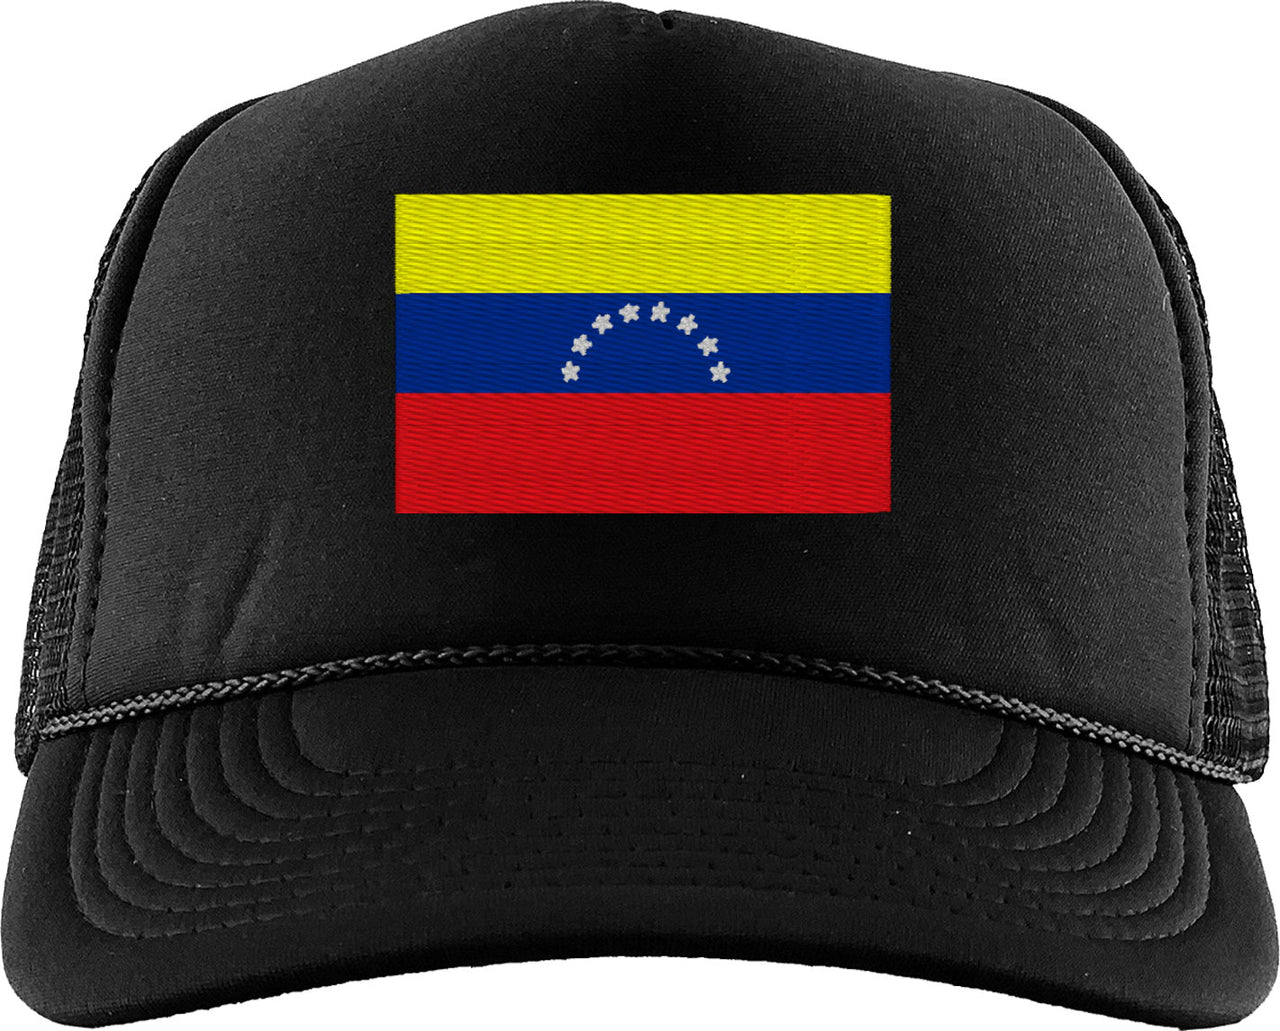 Venezuela Flag Foam Trucker Hat